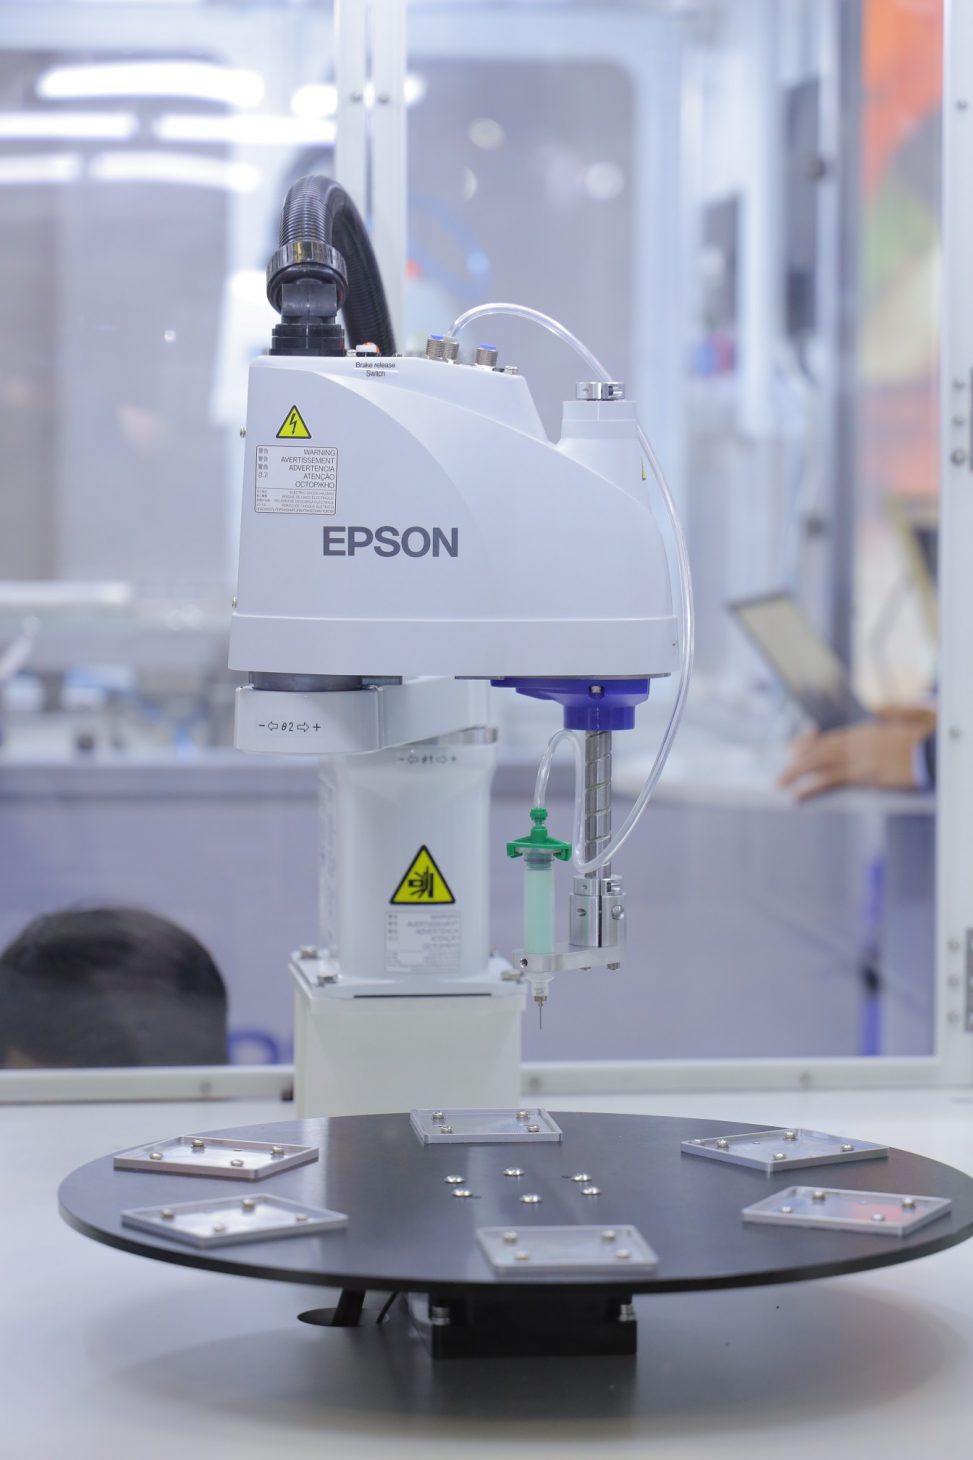 Epson giới thiệu robot công nghiệp ở METALEX - 3. Robot LS3 B